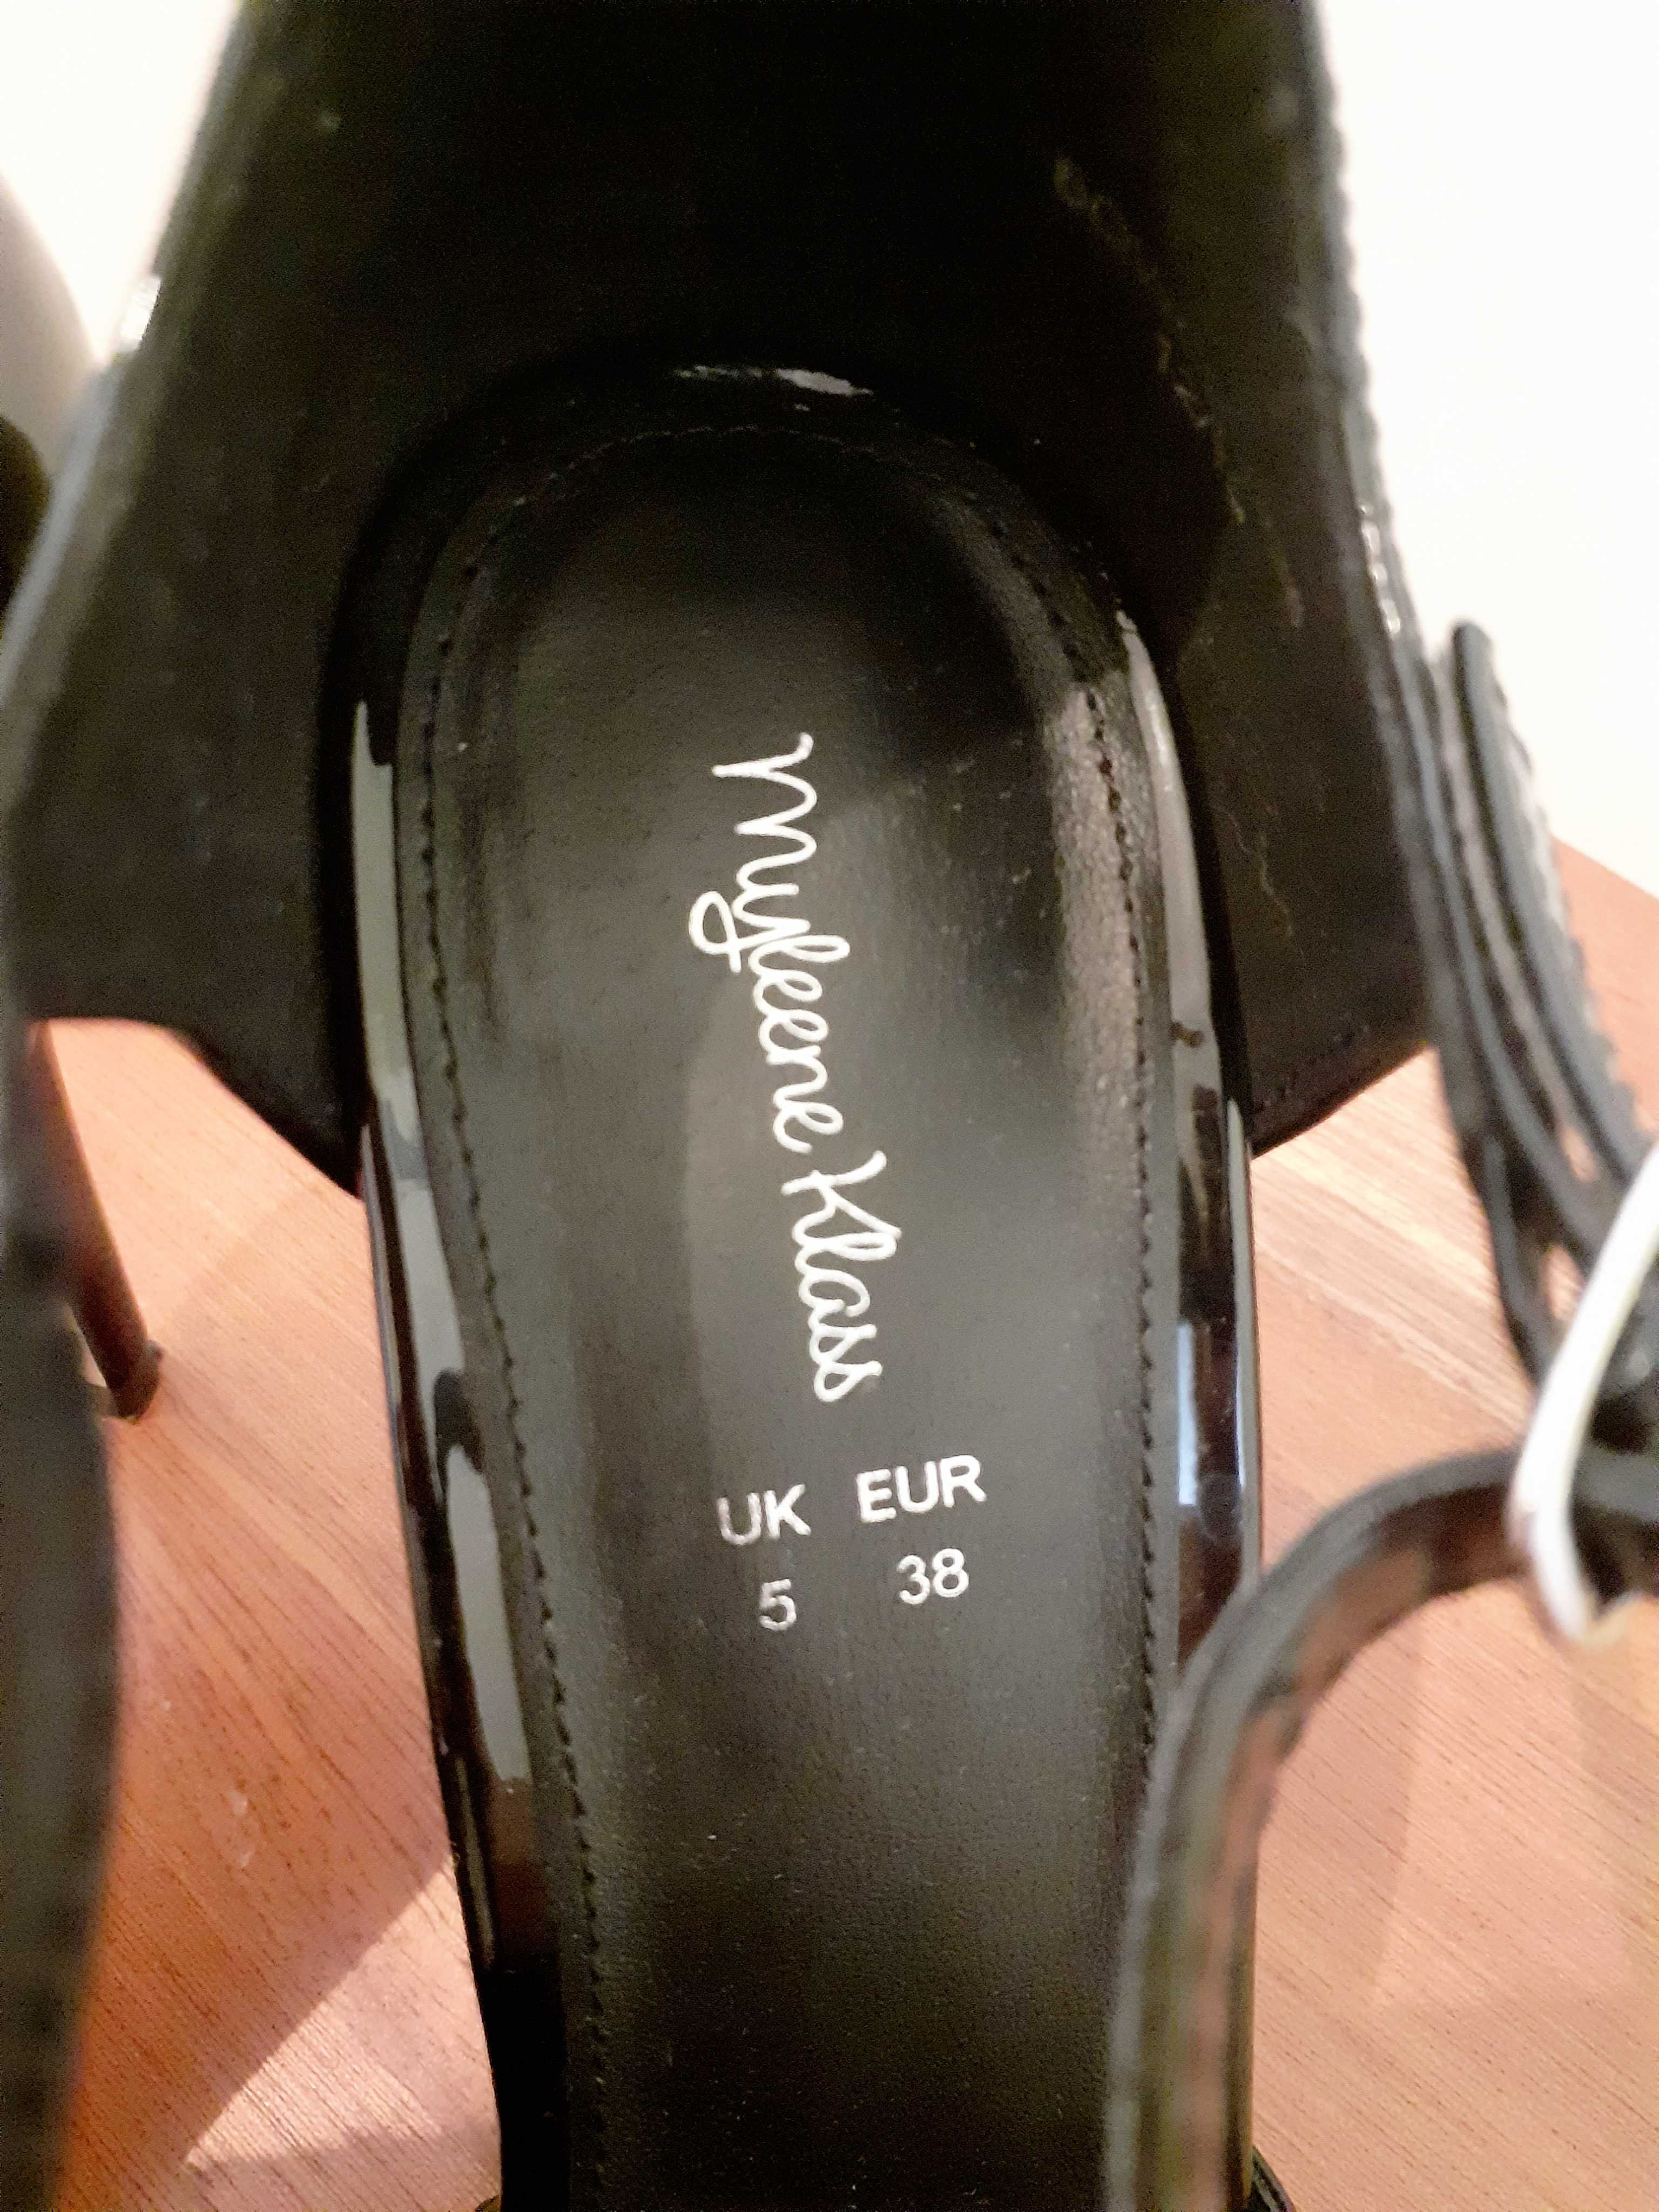 Лачени дамски обувки цвят черен